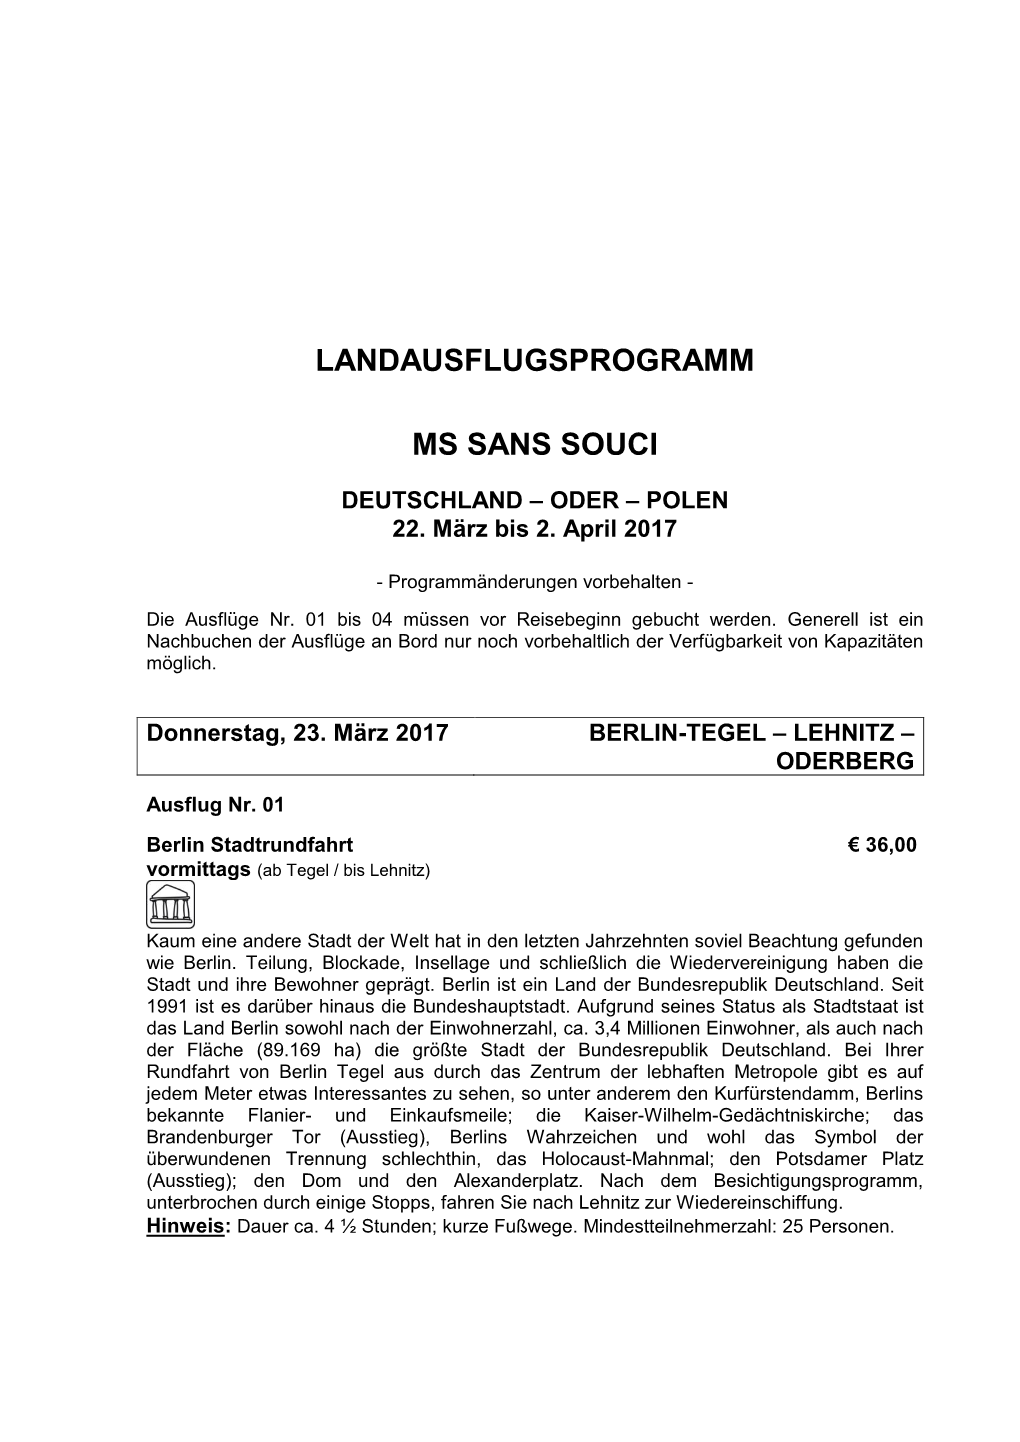 Landausflugsprogramm Ms Sans Souci